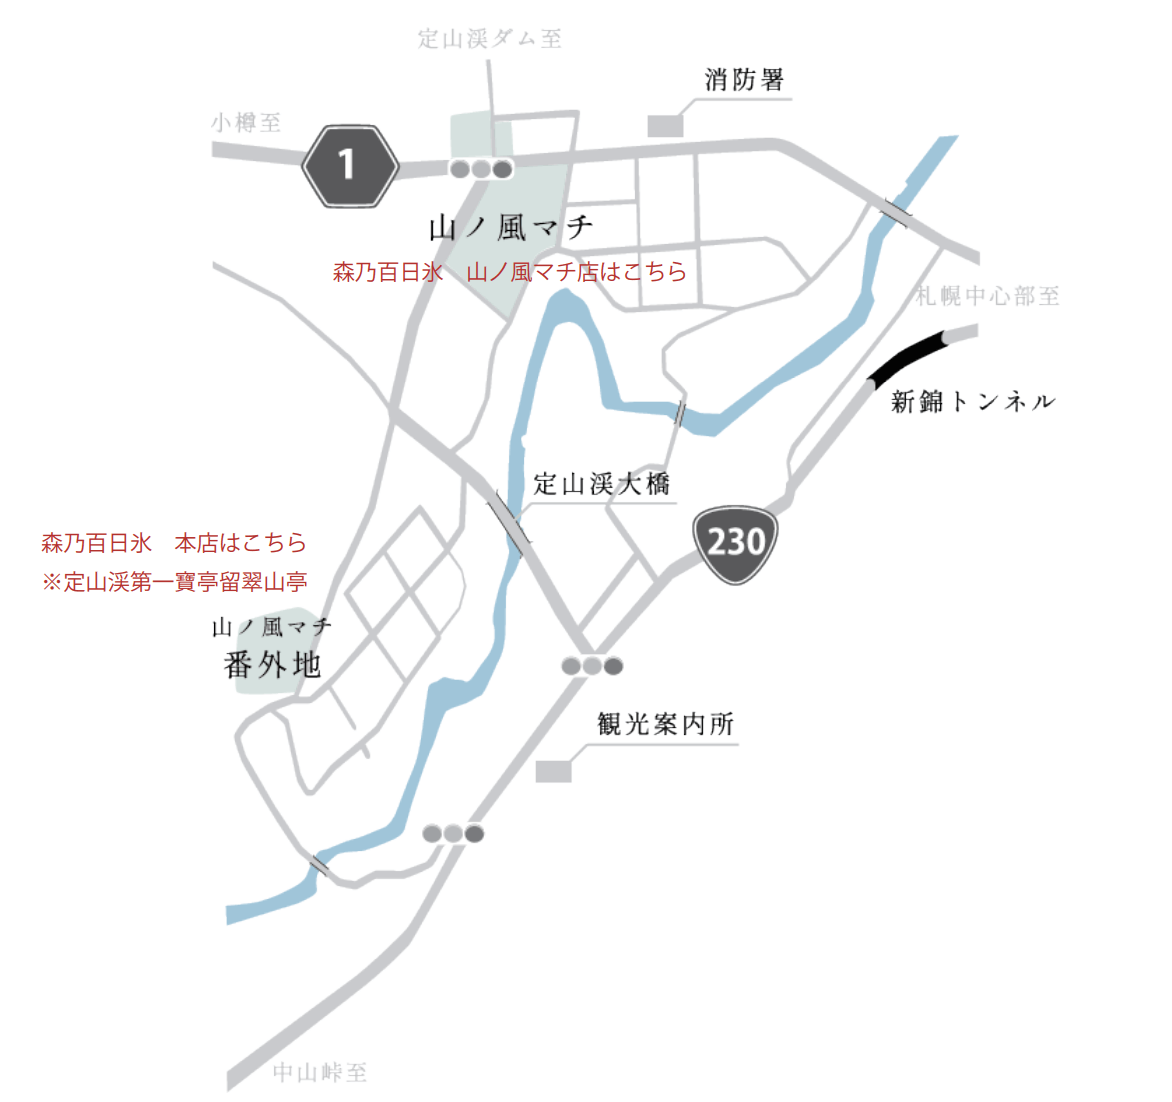 森乃百日氷(もりのひゃくにちごおり)の地図